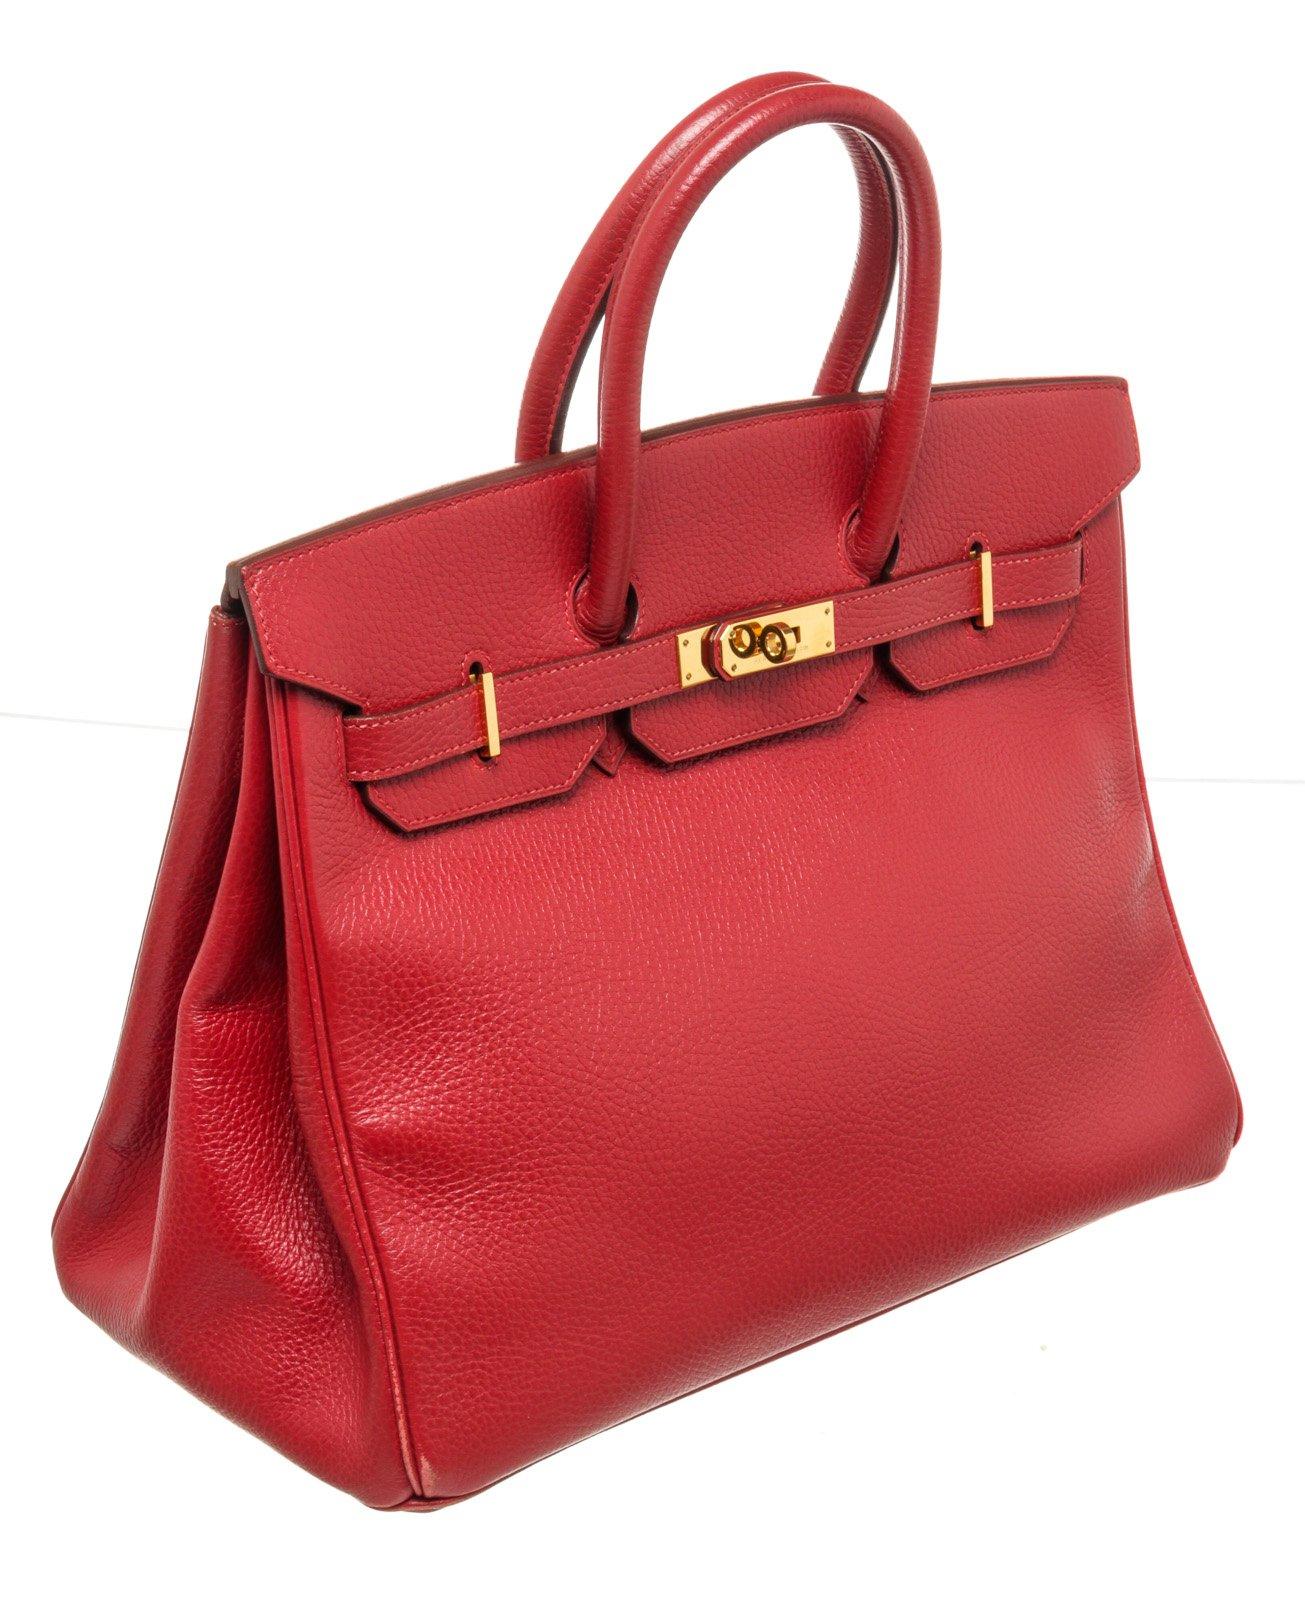 Hermes Red Leather Birkin 35cm Satchel Bag 3